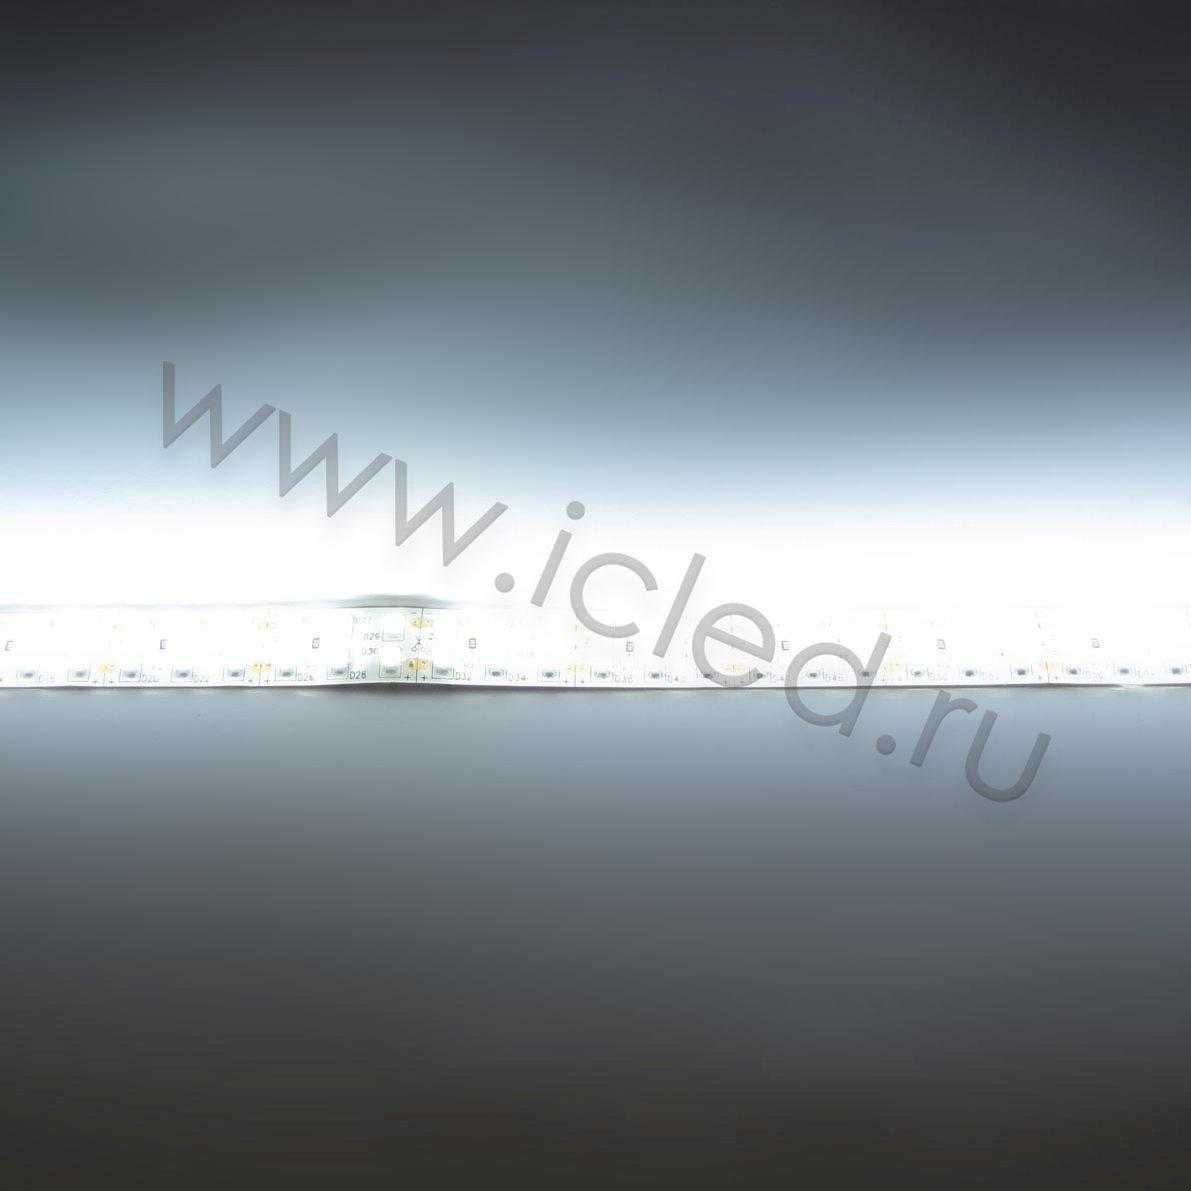 Влагозащищенные светодиодные ленты Светодиодная лента LUX class, 3528, 240 led/m, white, 24V, nano IP54 V241 Icled